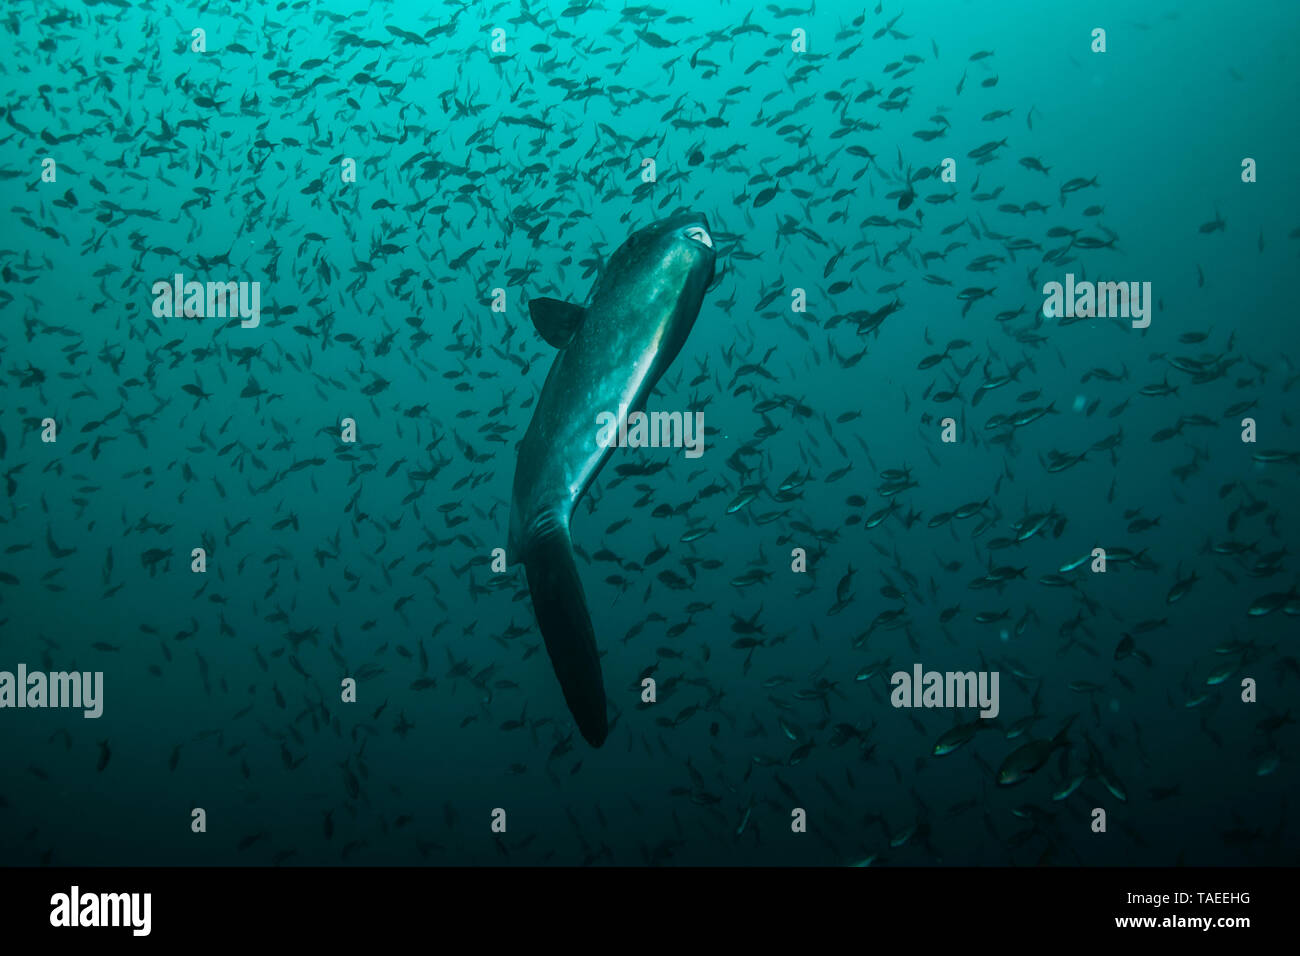 Tara Oceans Expeditions - Mayo de 2011. El ocean sunfish, Mola mola mola, o común, es la mayor conocida en el mundo de peces óseos. Tiene un peso promedio de los adultos de 1.000 kg (2.200 lb). La especie es nativa de las aguas tropicales y templadas de todo el mundo. Se asemeja a una cabeza de pescado con una cola, y su cuerpo principal está aplanado lateralmente. Sunfish pueden ser tan altos como son largos cuando sus aletas dorsal y ventral están extendidos. Sunfish viven en una dieta que consiste principalmente de medusas, sino porque este Foto de stock